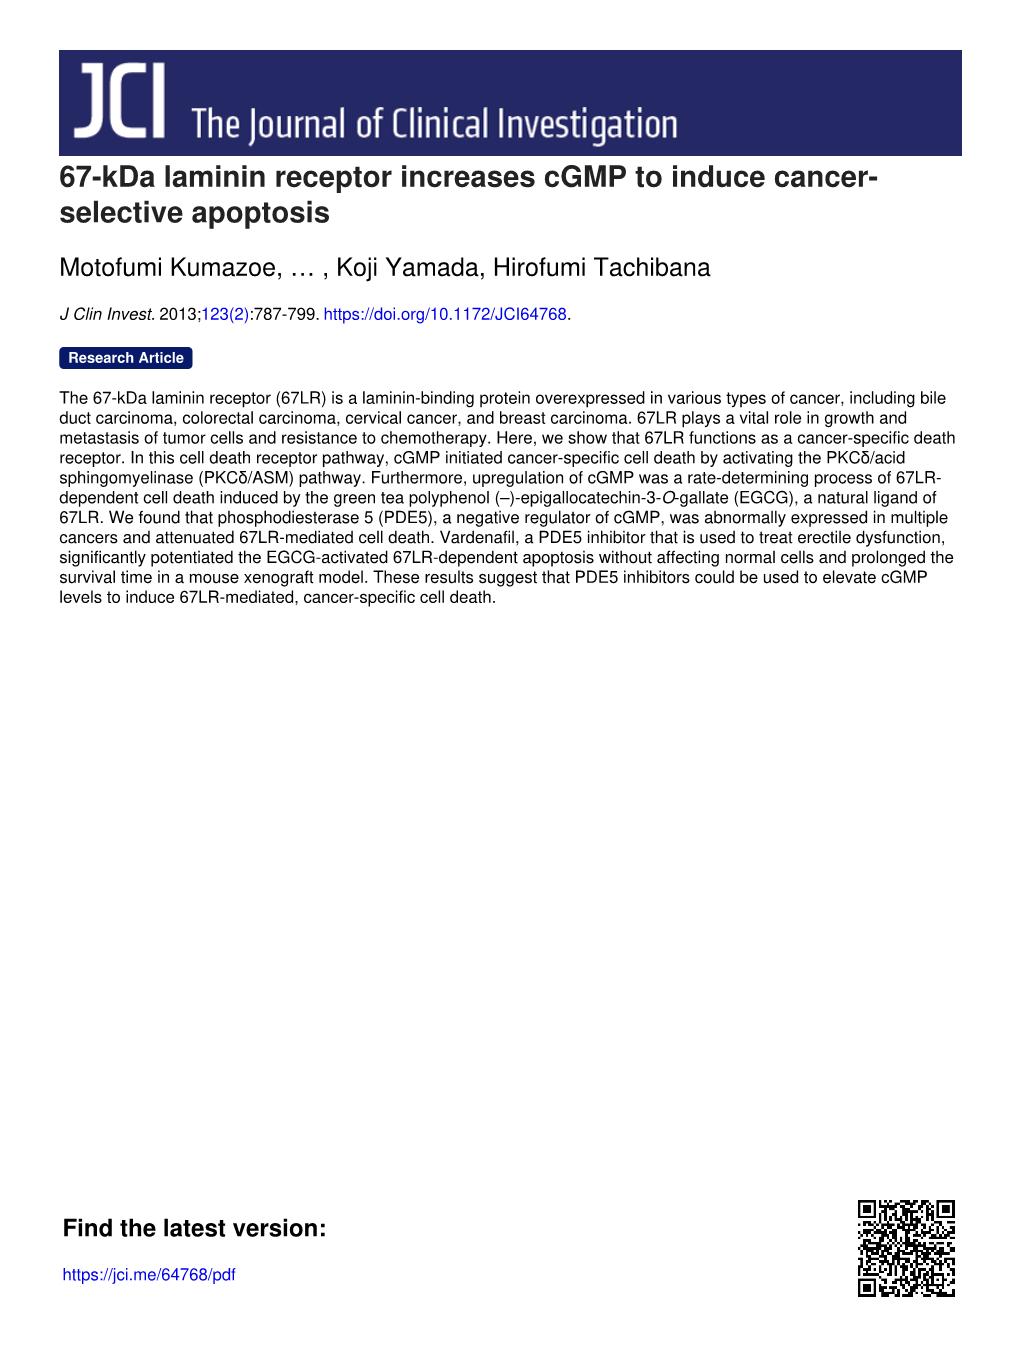 67-Kda Laminin Receptor Increases Cgmp to Induce Cancer- Selective Apoptosis